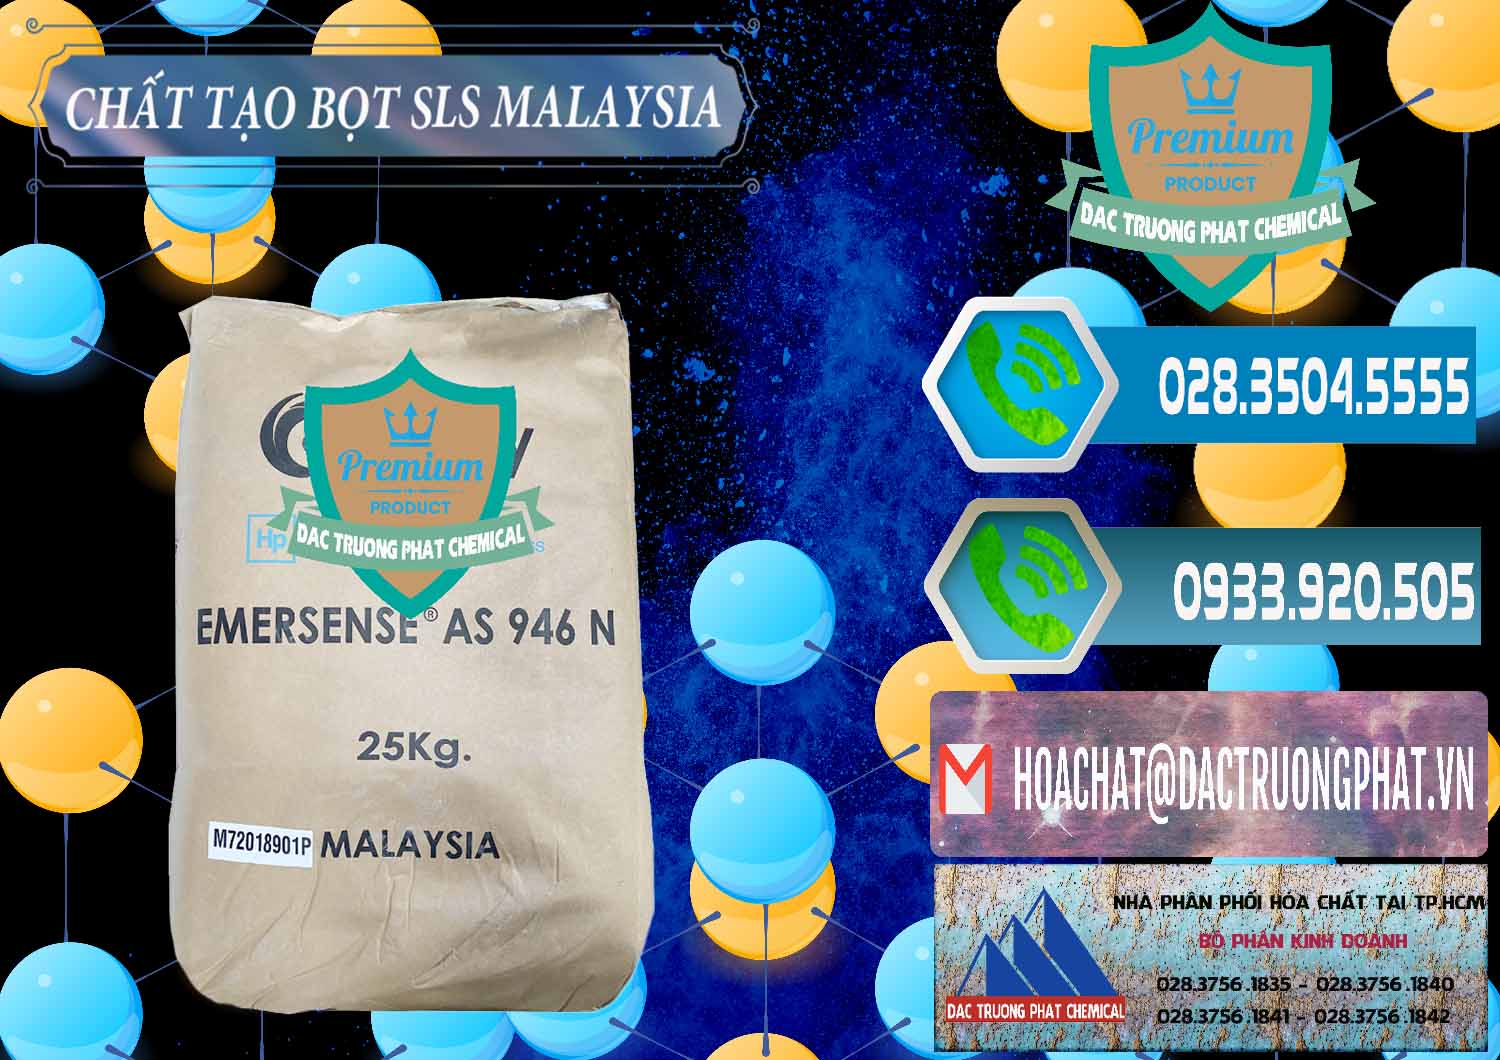 Công ty chuyên bán & phân phối Chất Tạo Bọt SLS Emery - Emersense AS 946N Mã Lai Malaysia - 0423 - Cung cấp - bán hóa chất tại TP.HCM - congtyhoachat.net